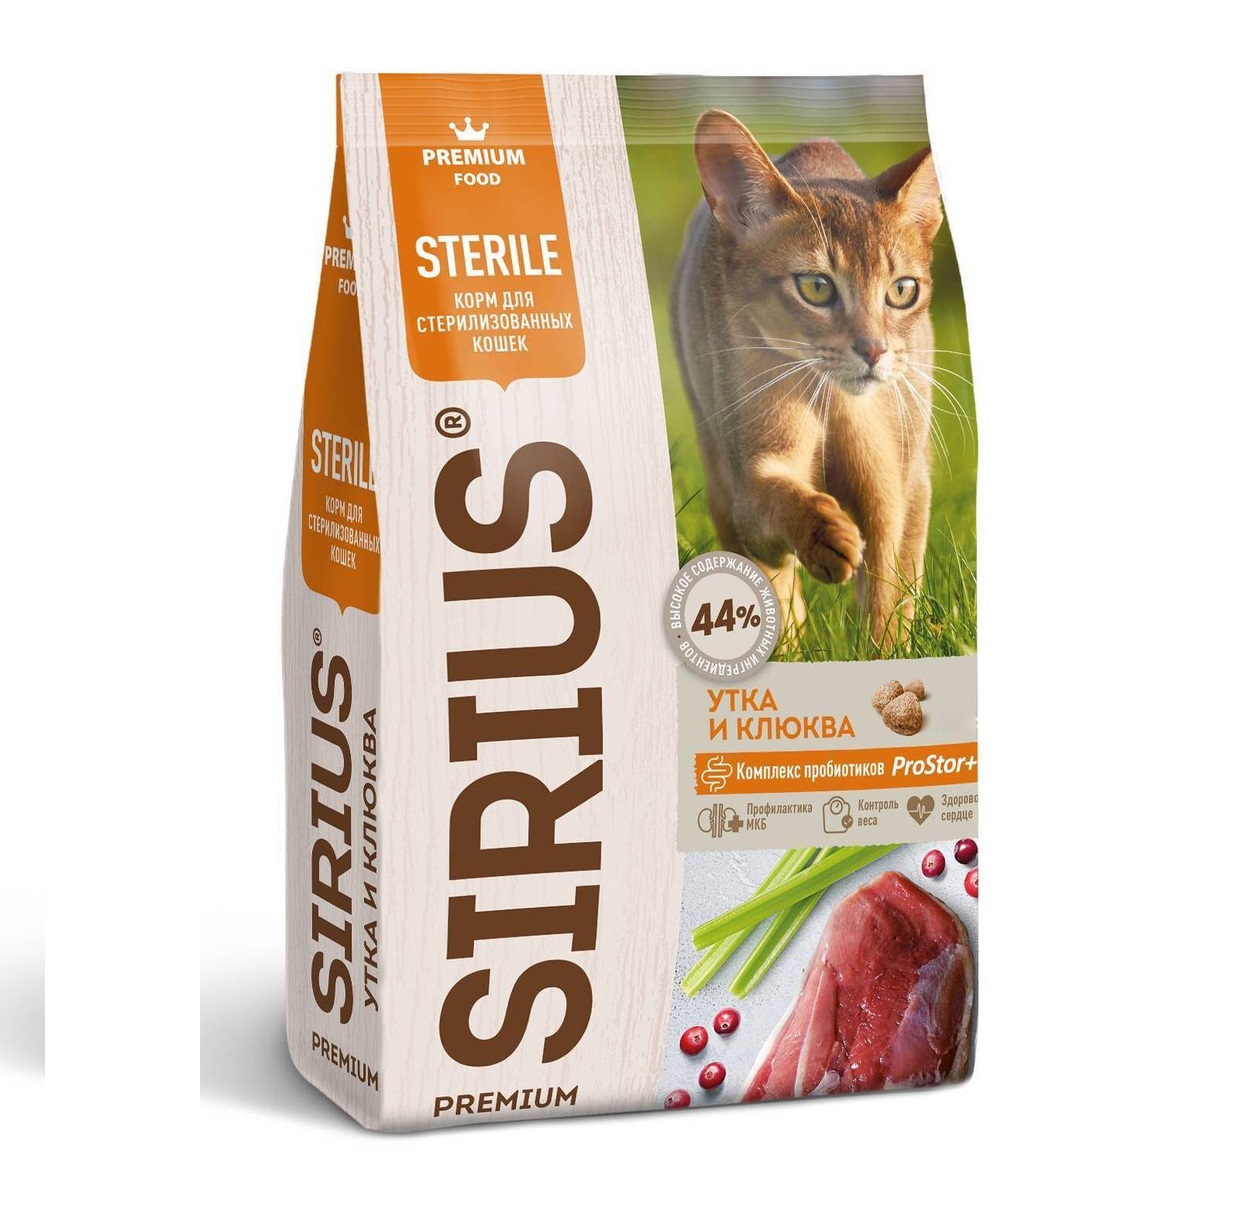 Сириус 400гр - для кошек Стерилизованных Утка/Клюква (Sirius)